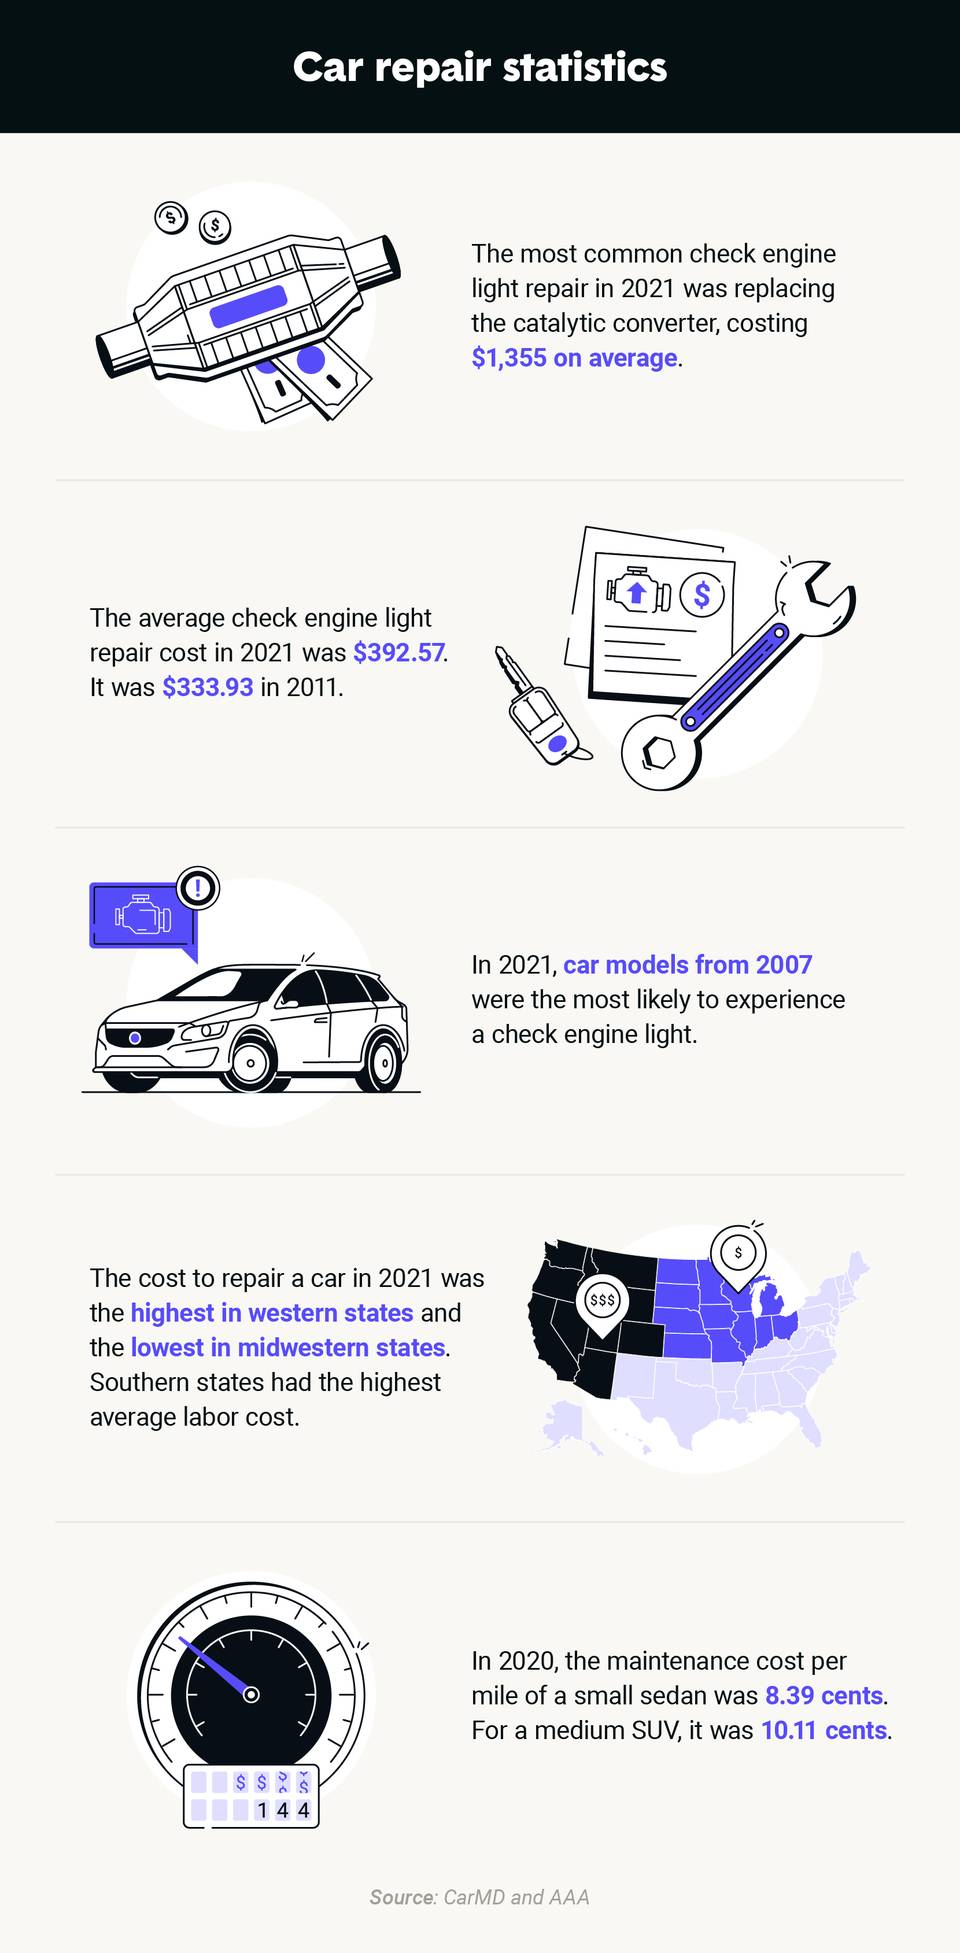 Average Car Repair Costs in 2022